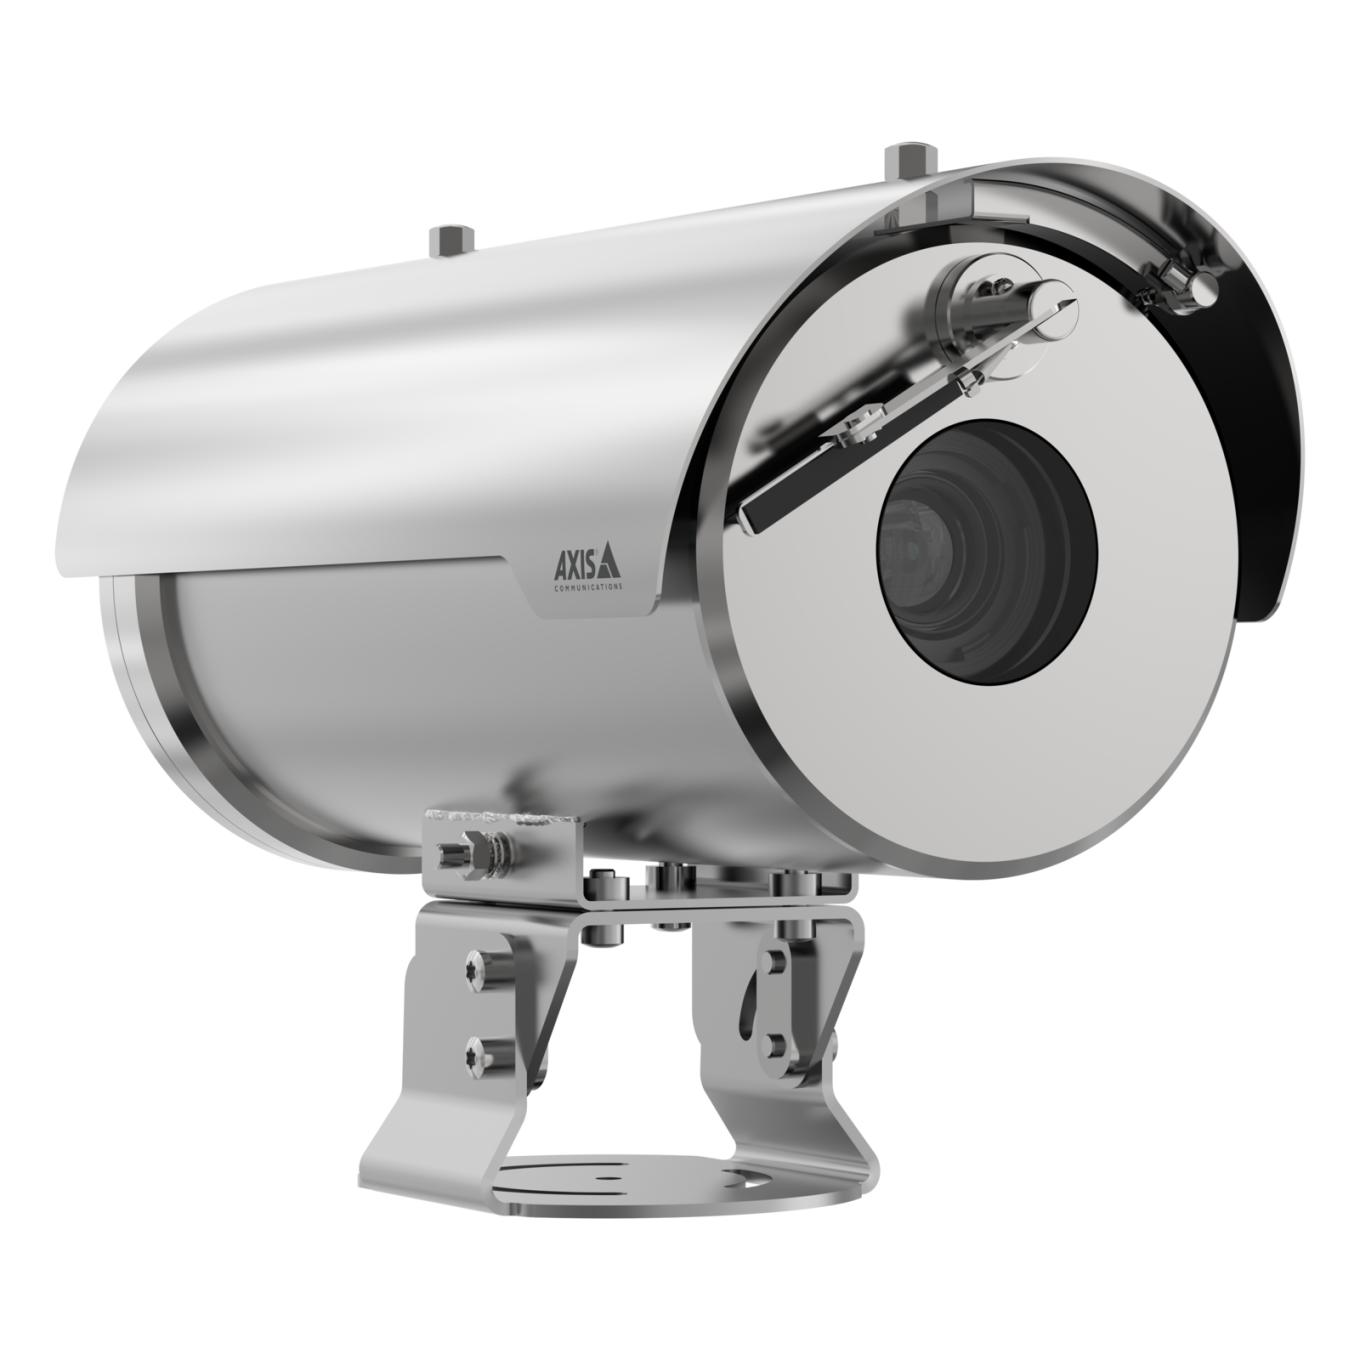 Kamera AXIS XFQ1656 w kolorze srebrnym, widok pod kątem z prawej strony.